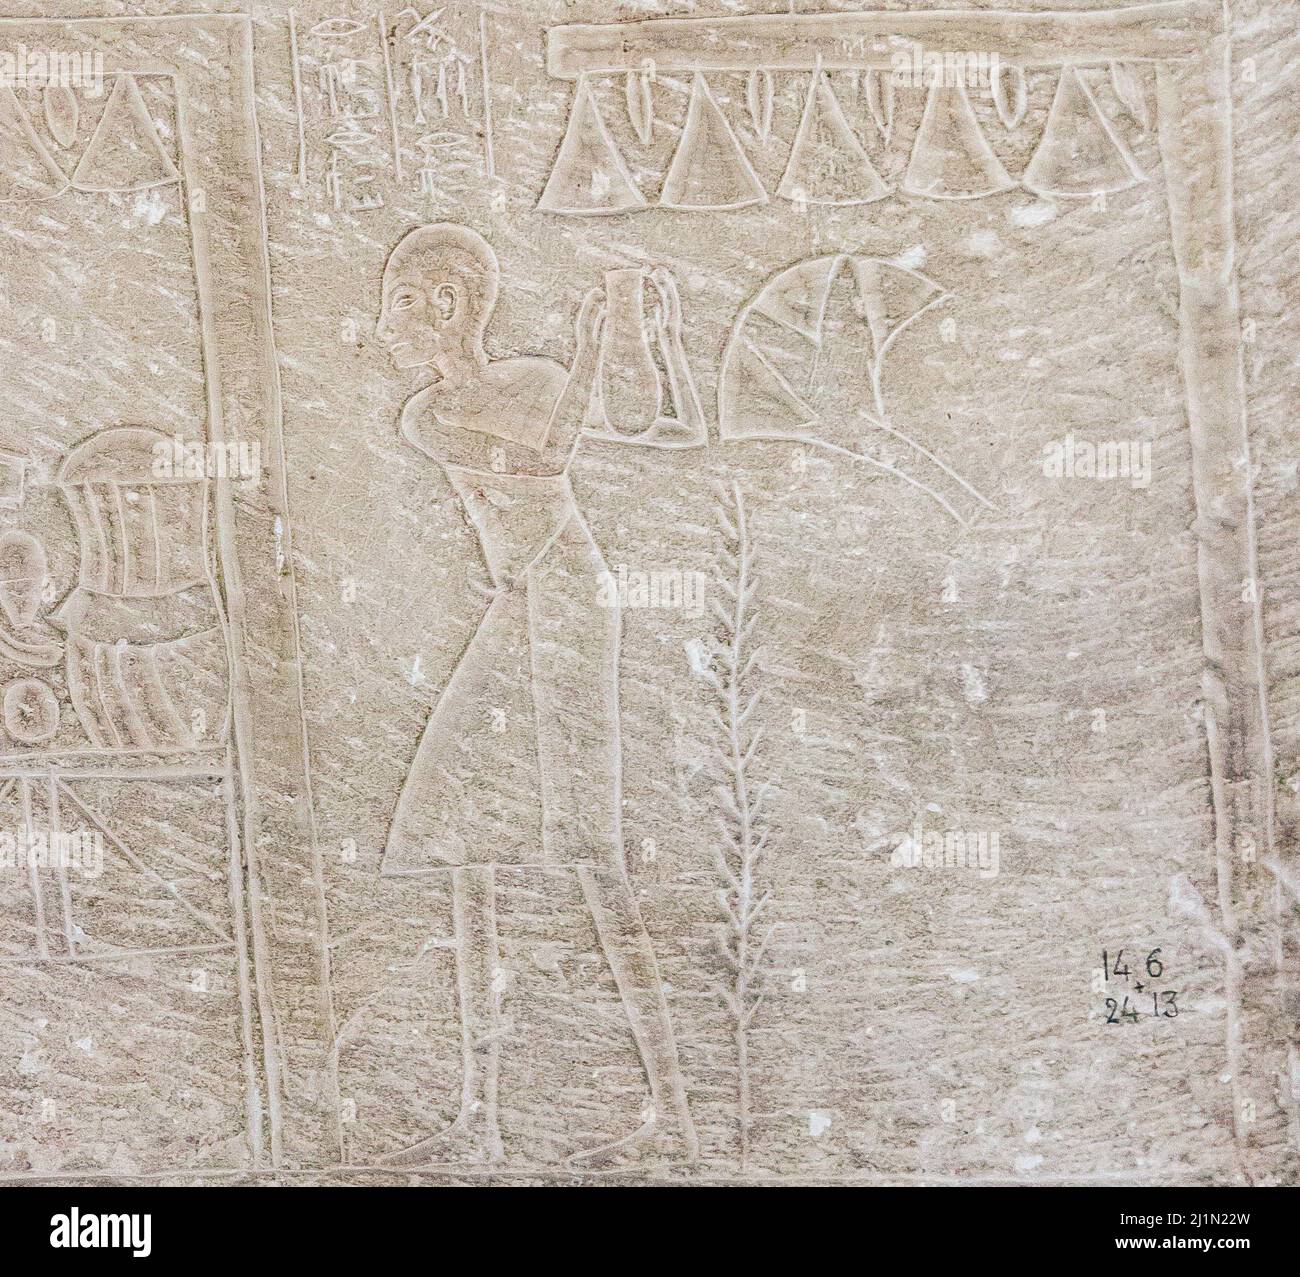 Cairo, Museo Egizio, tomba di Harmin, un grande rilievo: Terzo registro, gli uomini in chioschi stanno portando offerte. Foto Stock